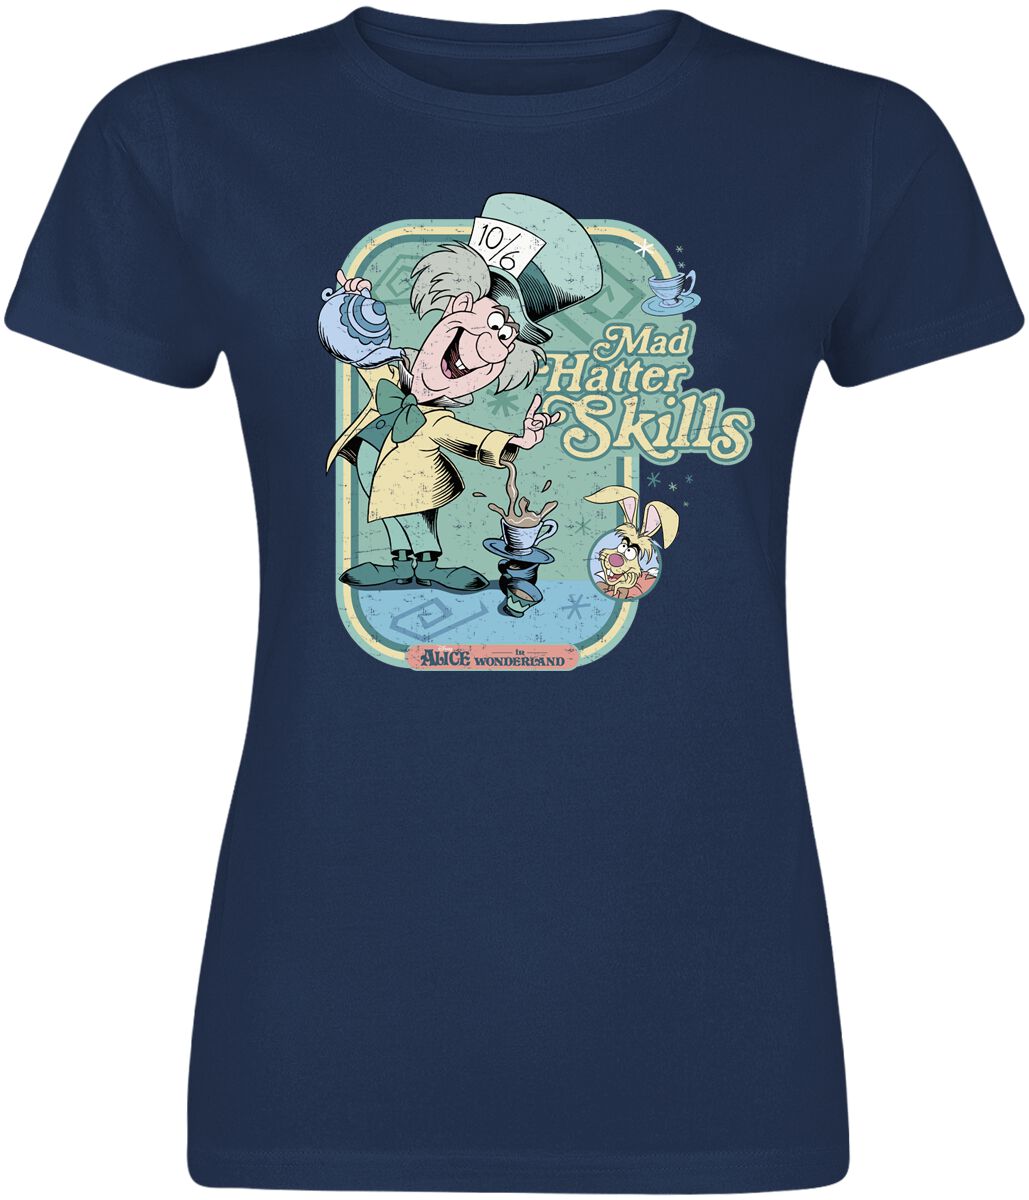 Alice im Wunderland - Disney T-Shirt - Mad hatter Skills - S bis XXL - für Damen - Größe S - navy  - EMP exklusives Merchandise!